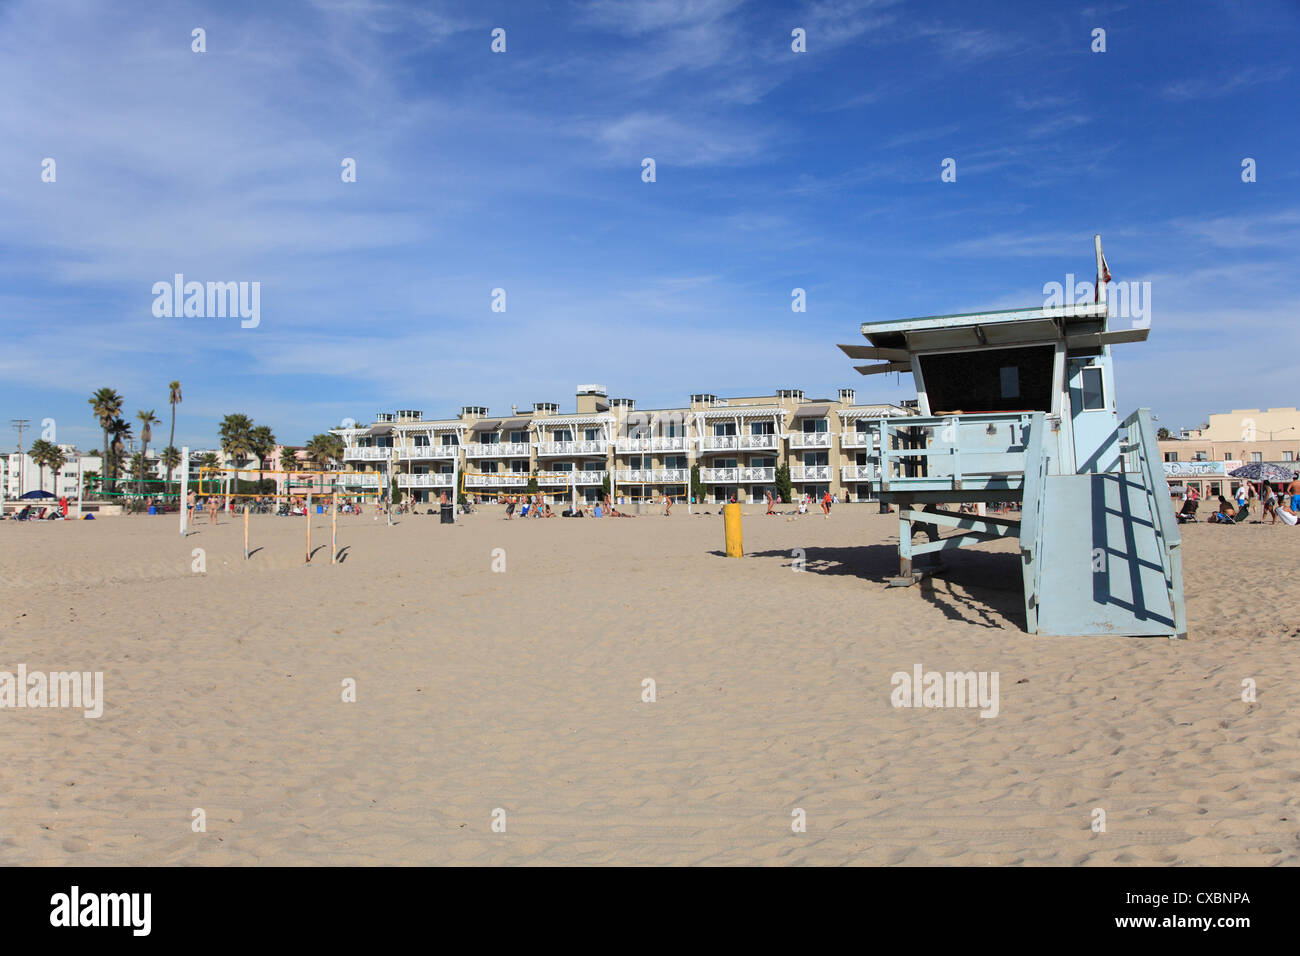 Hermosa Beach, Los Angeles, Californie, États-Unis d'Amérique, Amérique du Nord Banque D'Images